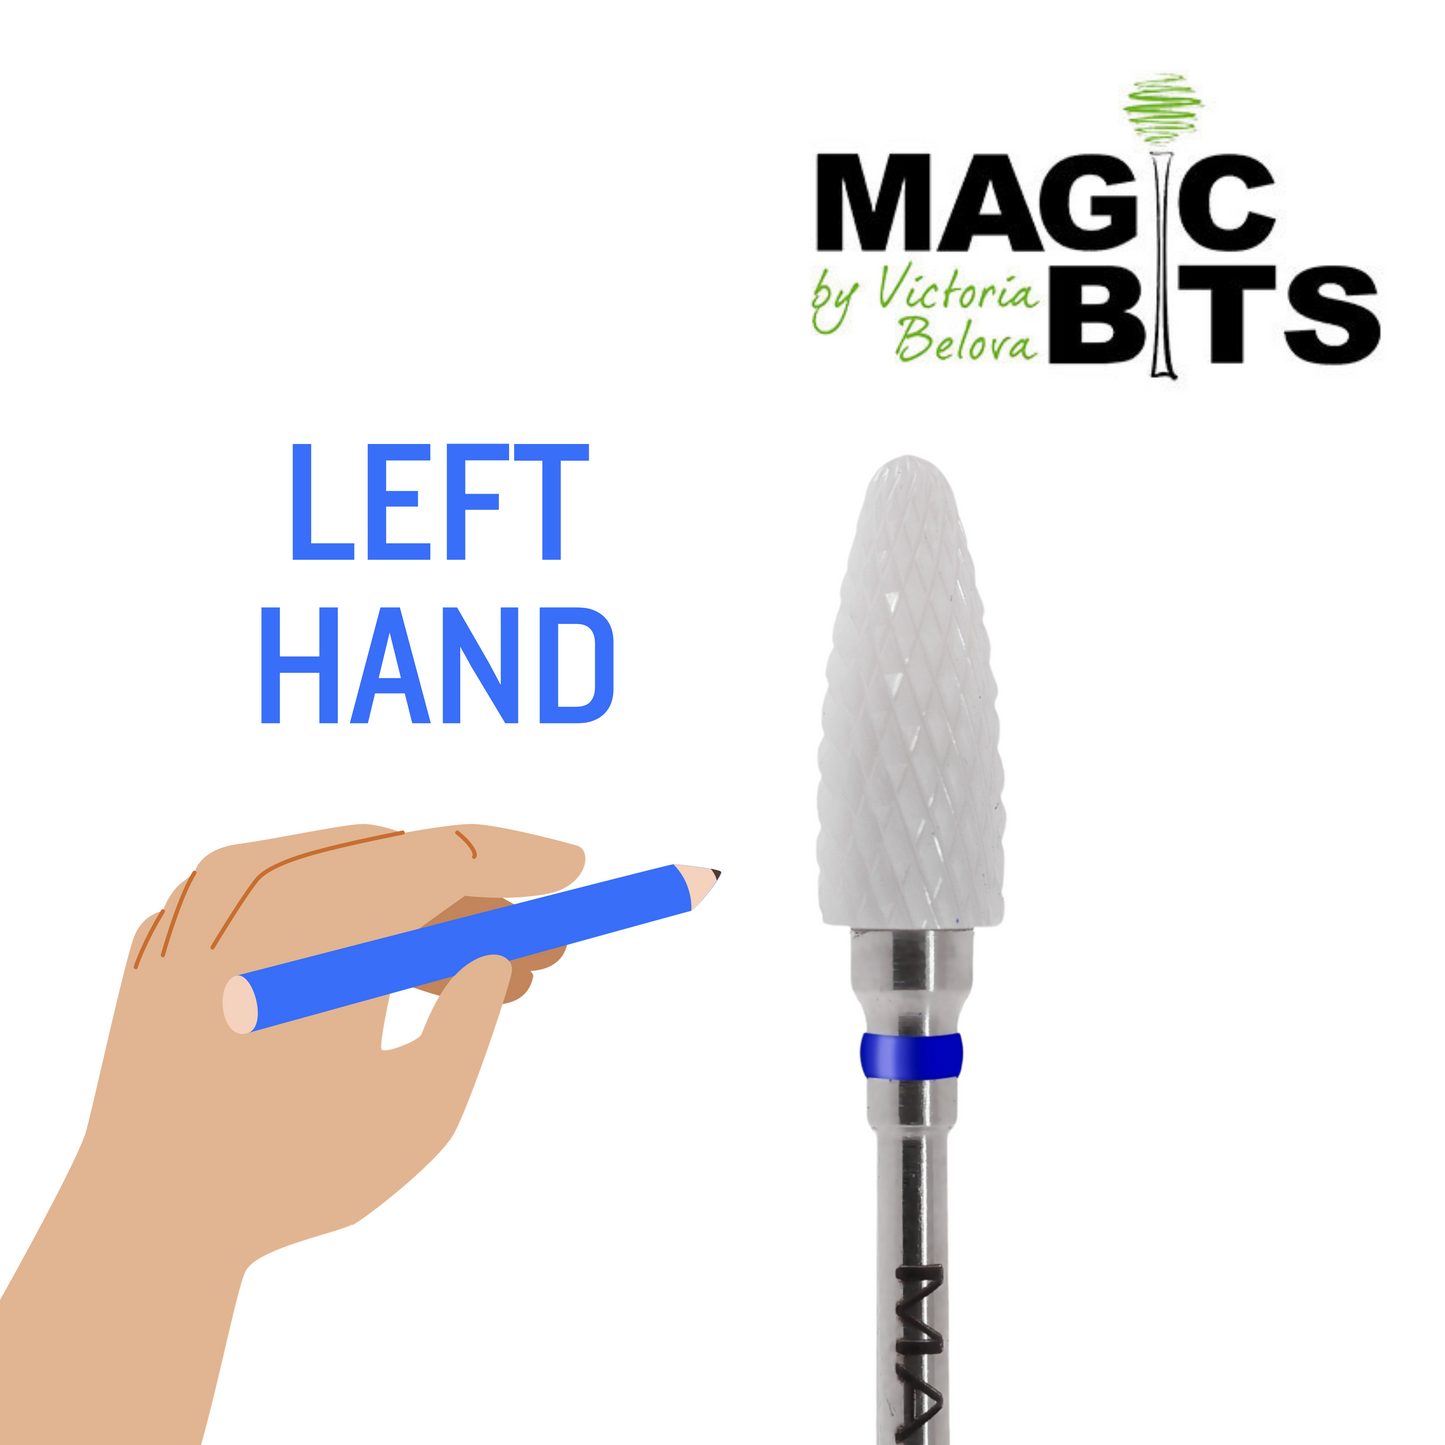 MAGIC BITS CERAMIC CORN - LEFT HAND